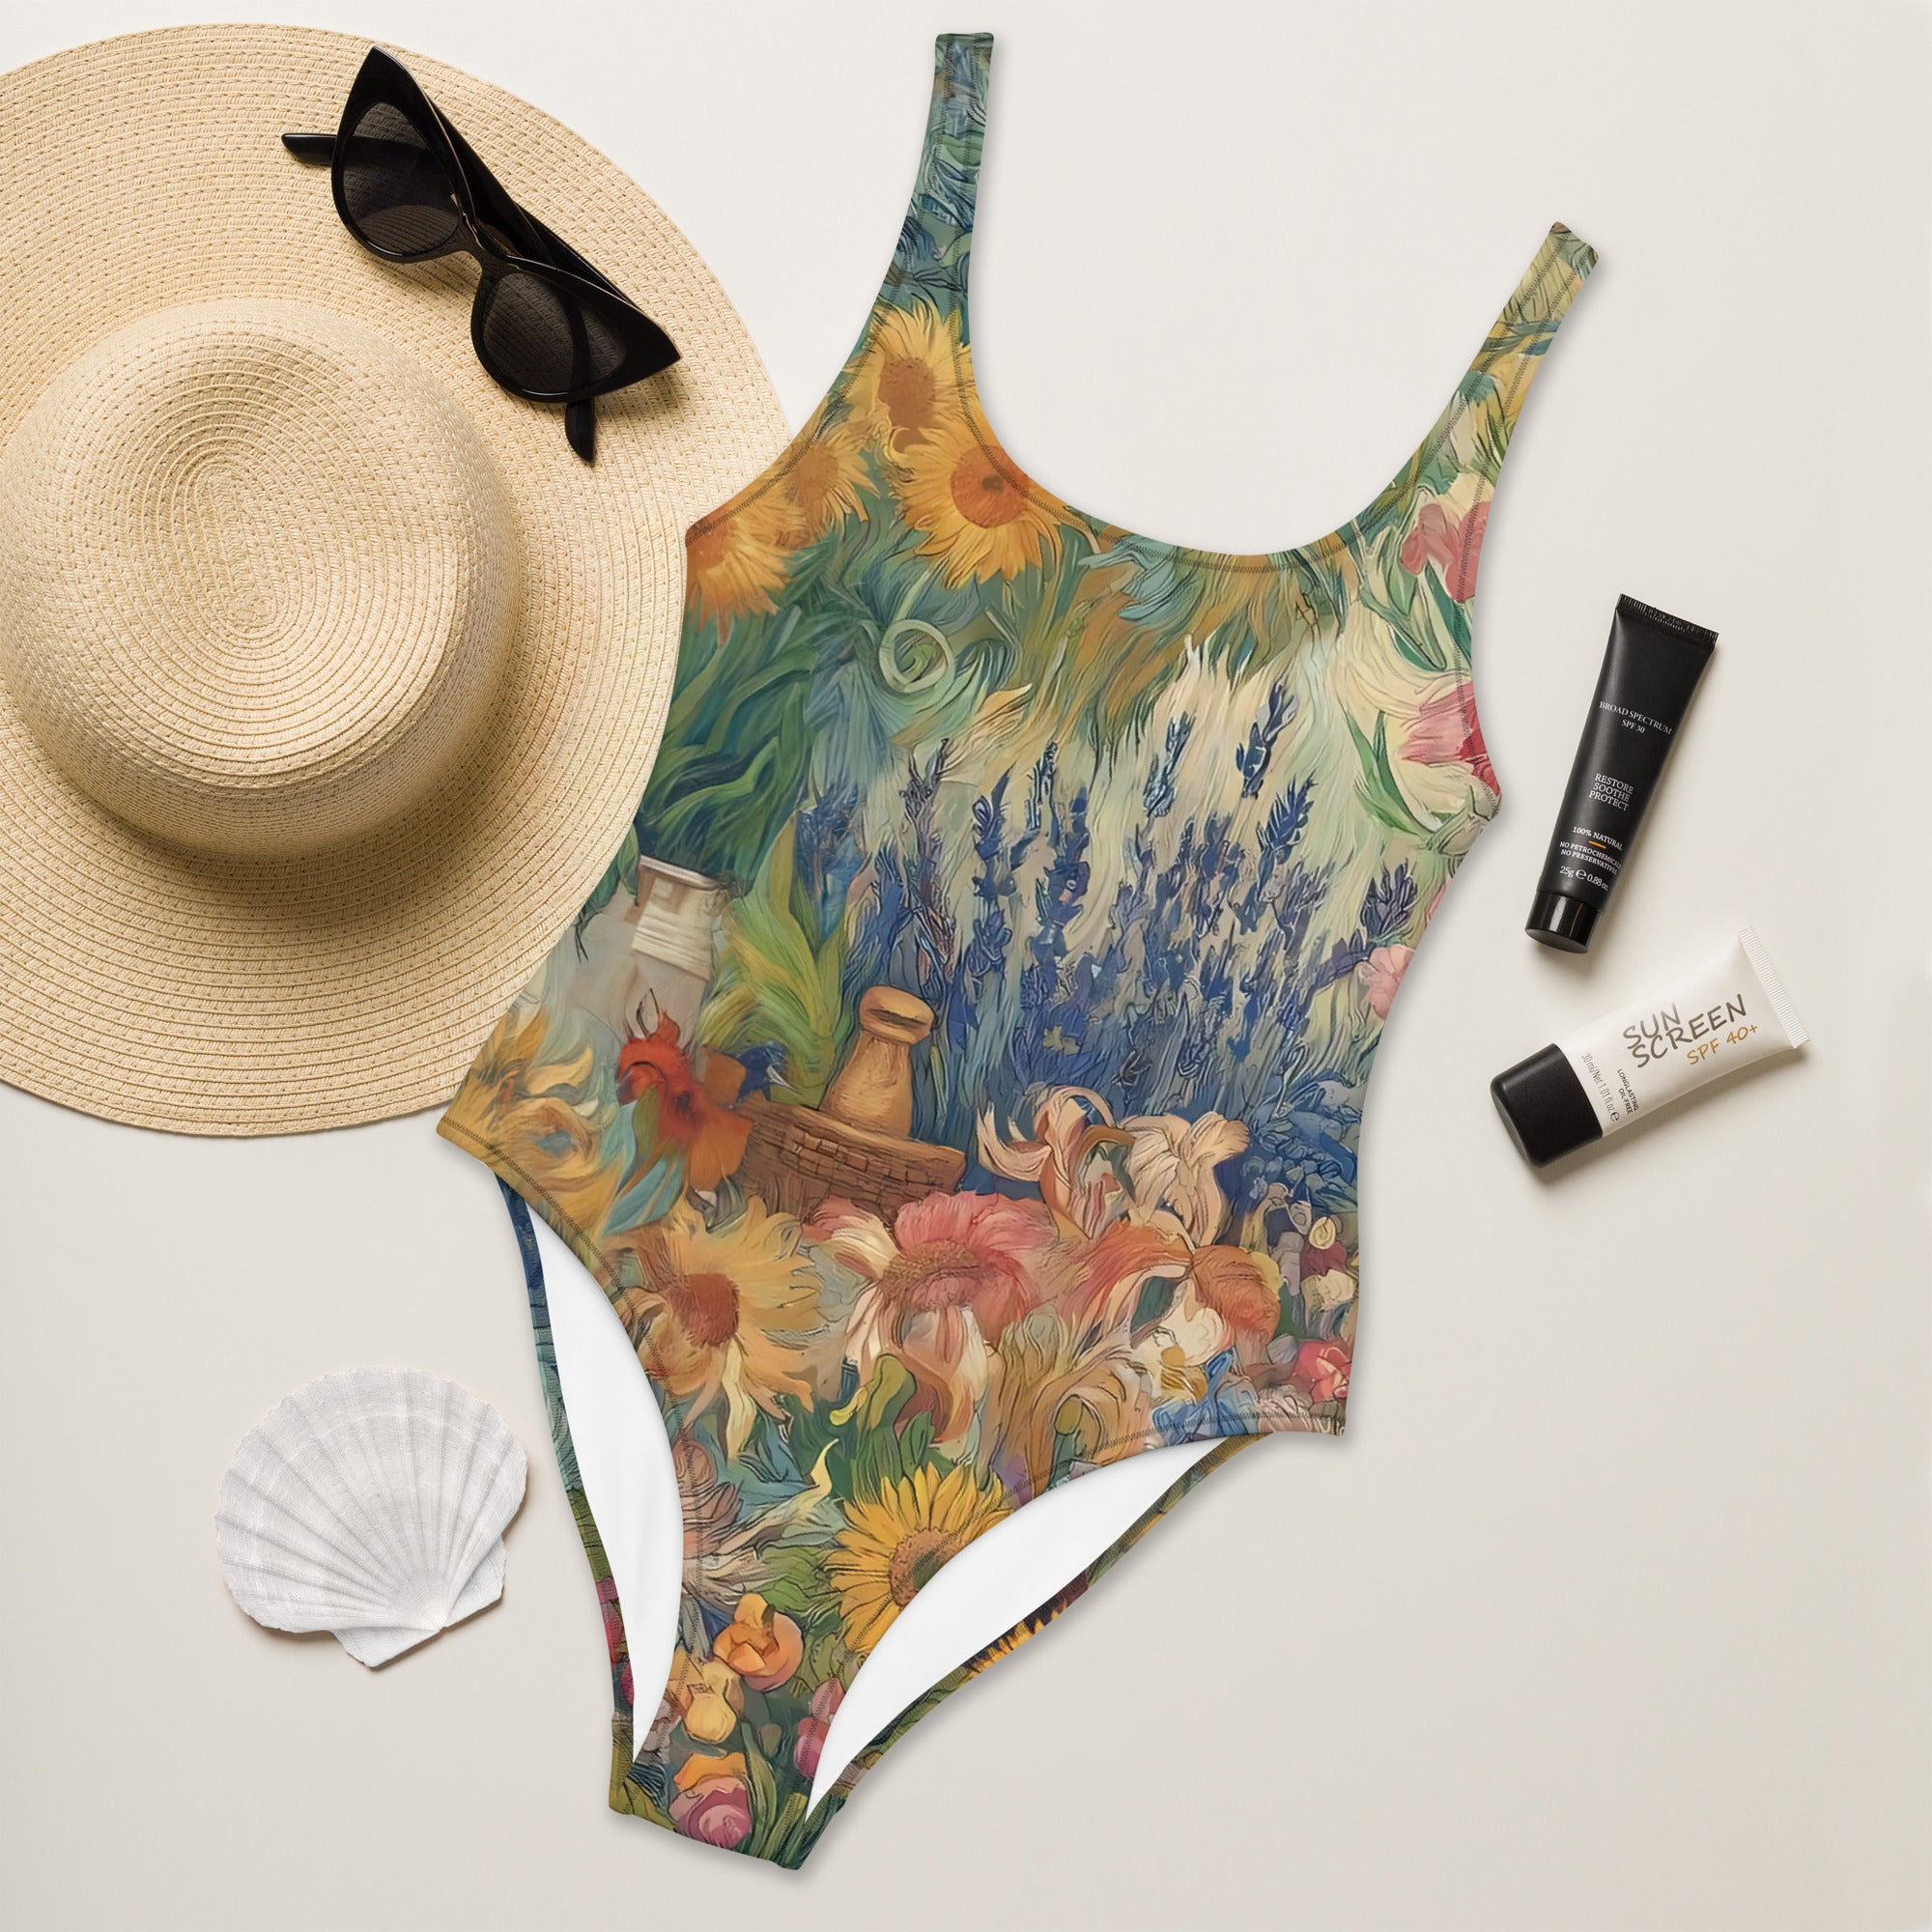 Vincent van Gogh 'Garden at Arles' Famous Painting Swimsuit | Premium Art One Piece Swimsuit